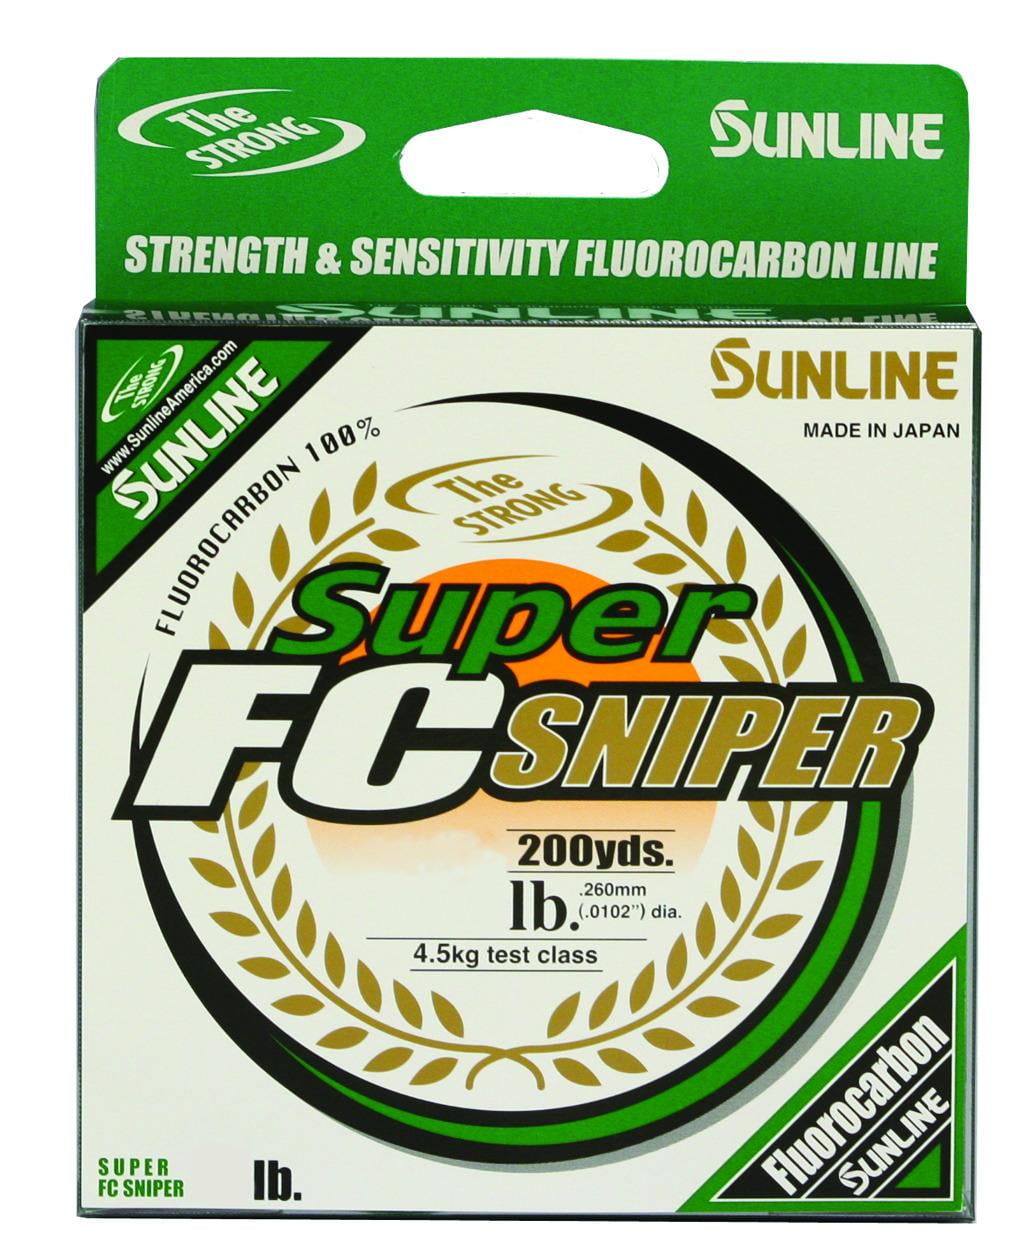 Sunline 63050346 Super FC Sniper Fluorocarbon Line Green 200 Yards 12Lb 